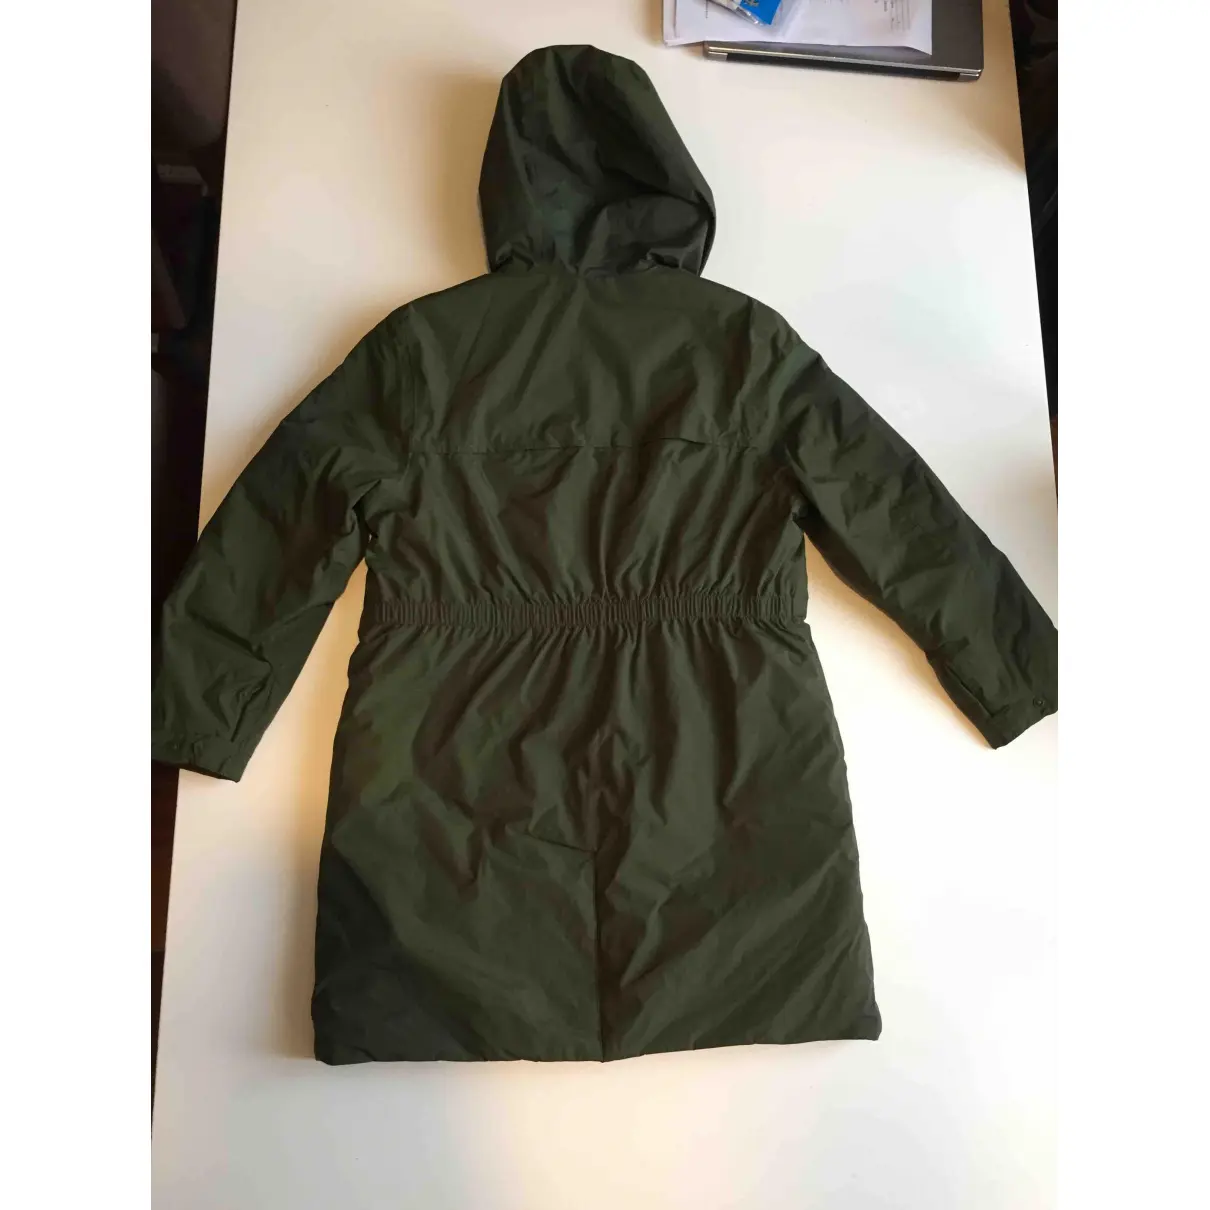 Buy K-Way Green Polyester Jacket & coat online